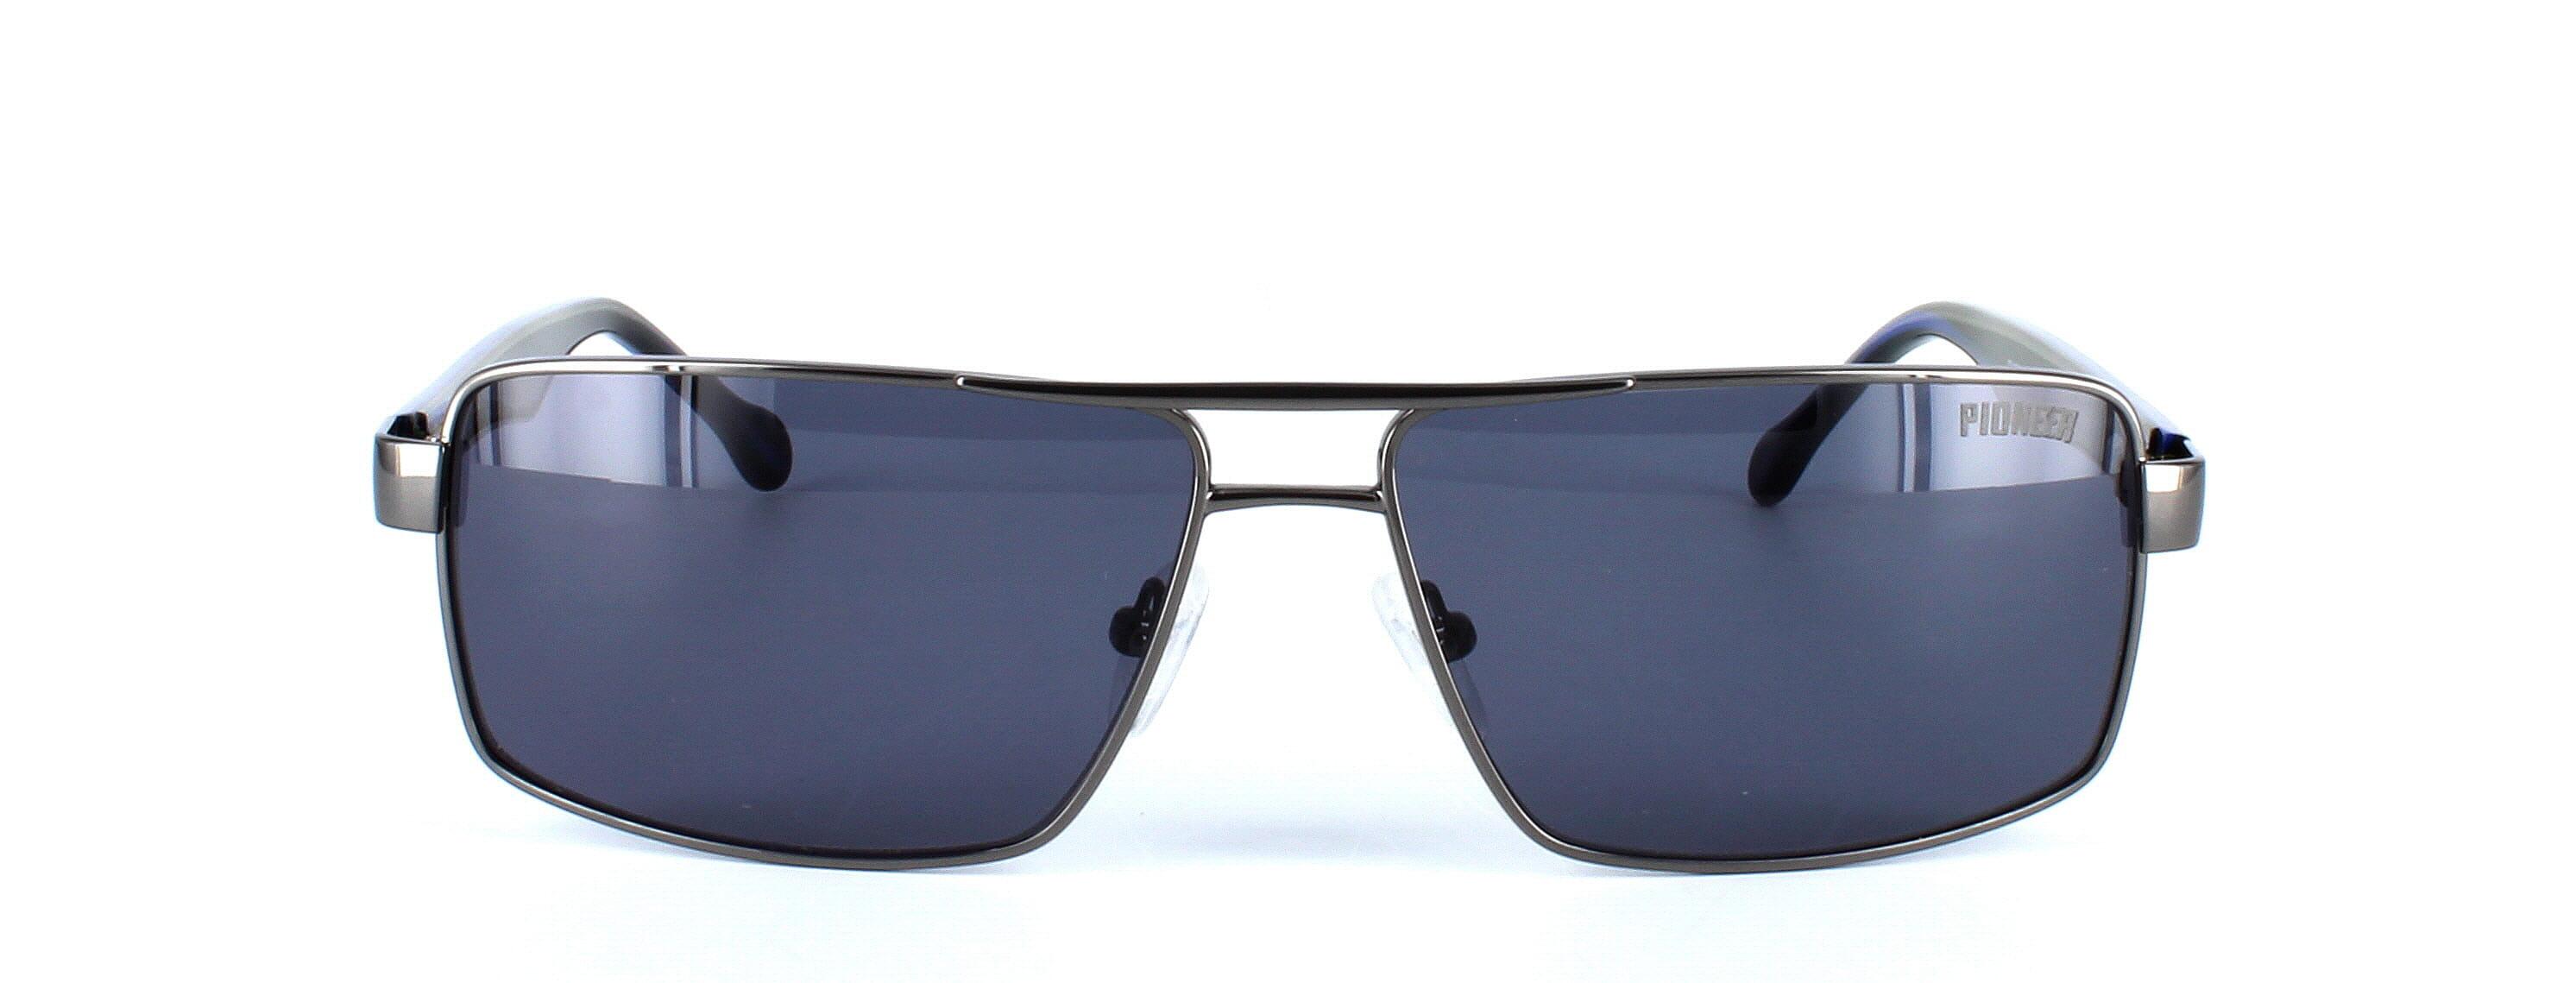 Odonata - Unisex aviator style prescription sunglasses in gunmetal - image view 5